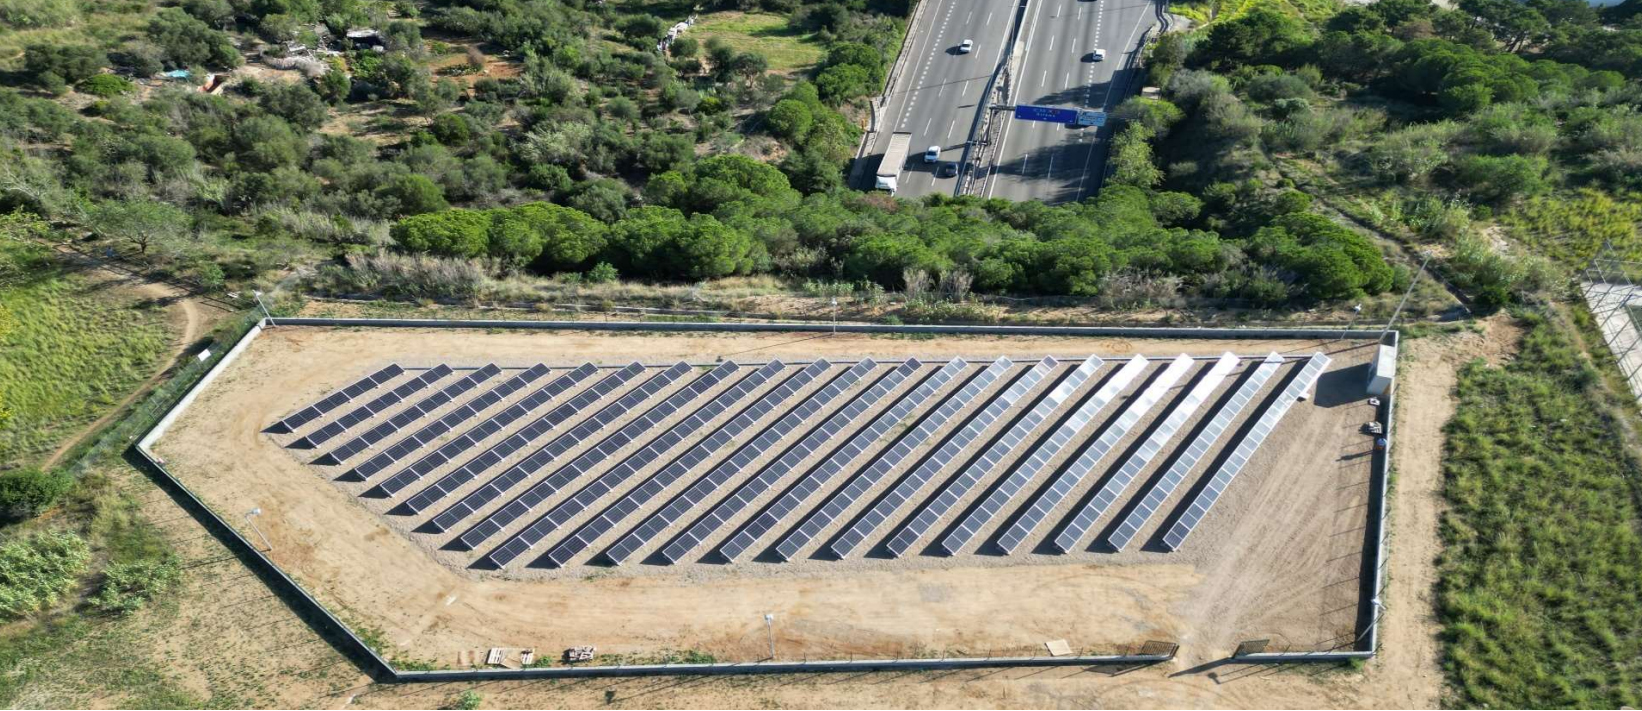 Imagen del artículo Territori instal·larà 22 plantes fotovoltaiques per assolir l'autoconsum als 6.000 quilòmetres de les carreteres de la Generalitat el 2026